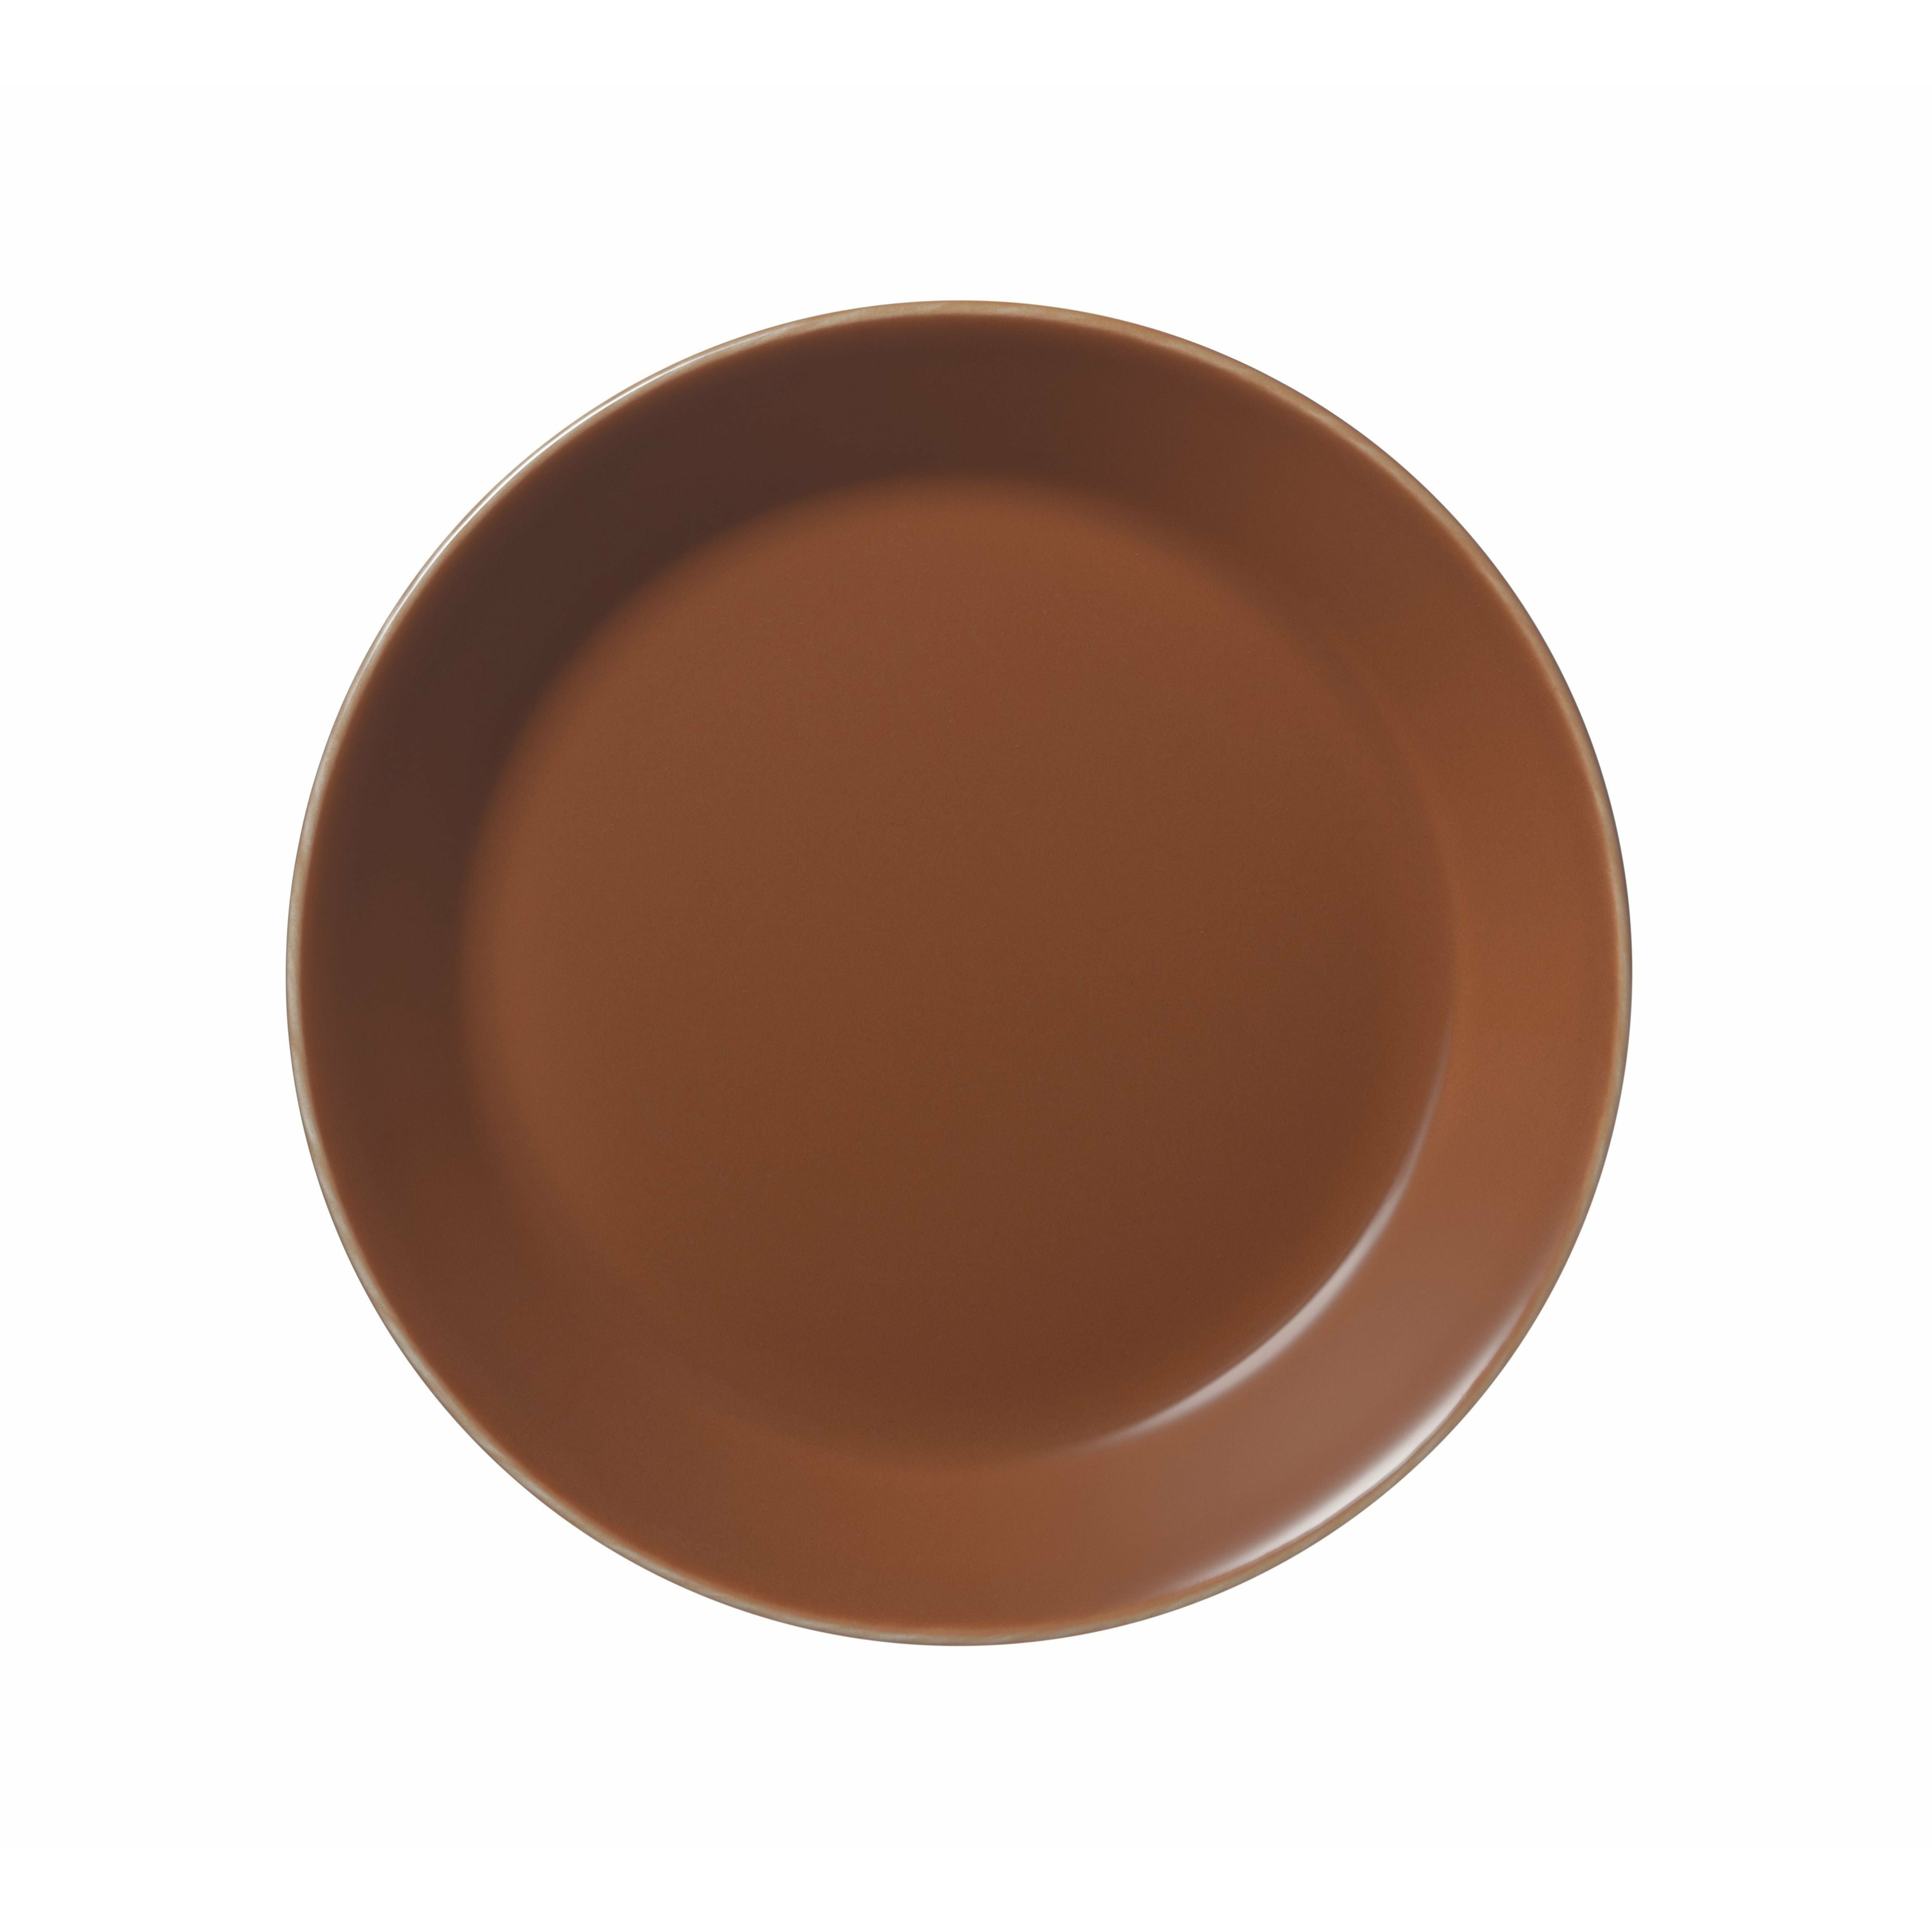 Iittala Teema plade 17 cm, vintage brun